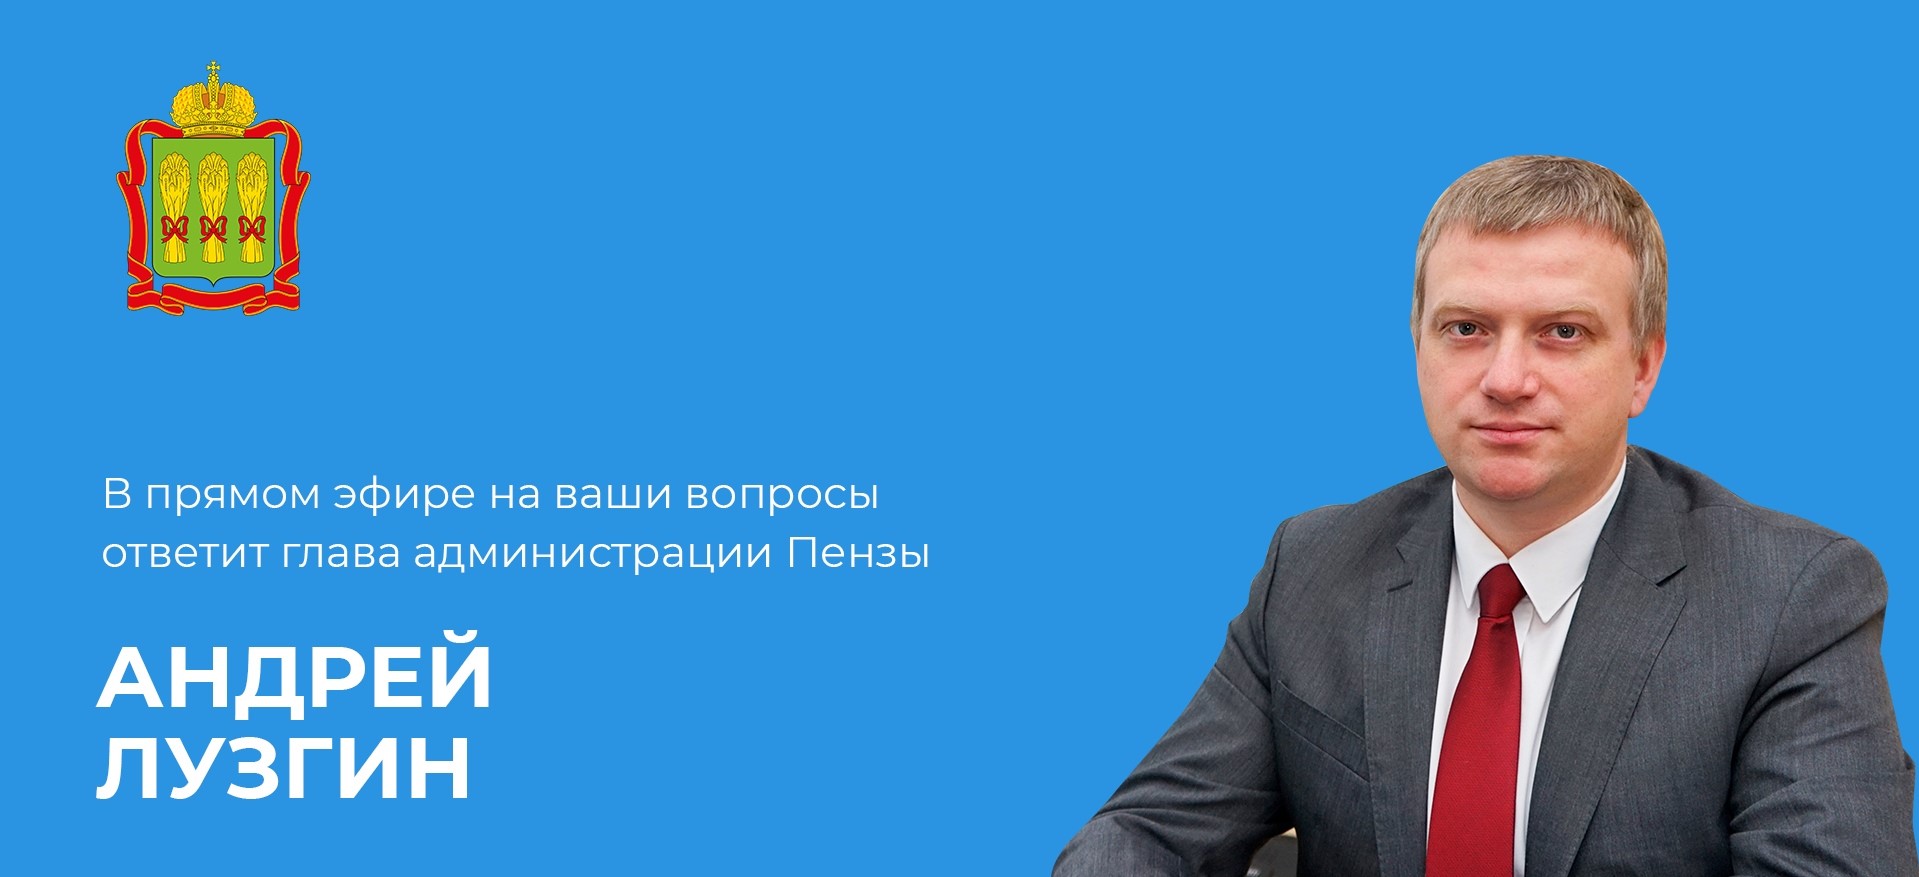 Мэр Пензы Андрей Лузгин ответит на вопросы горожан в прямом эфире